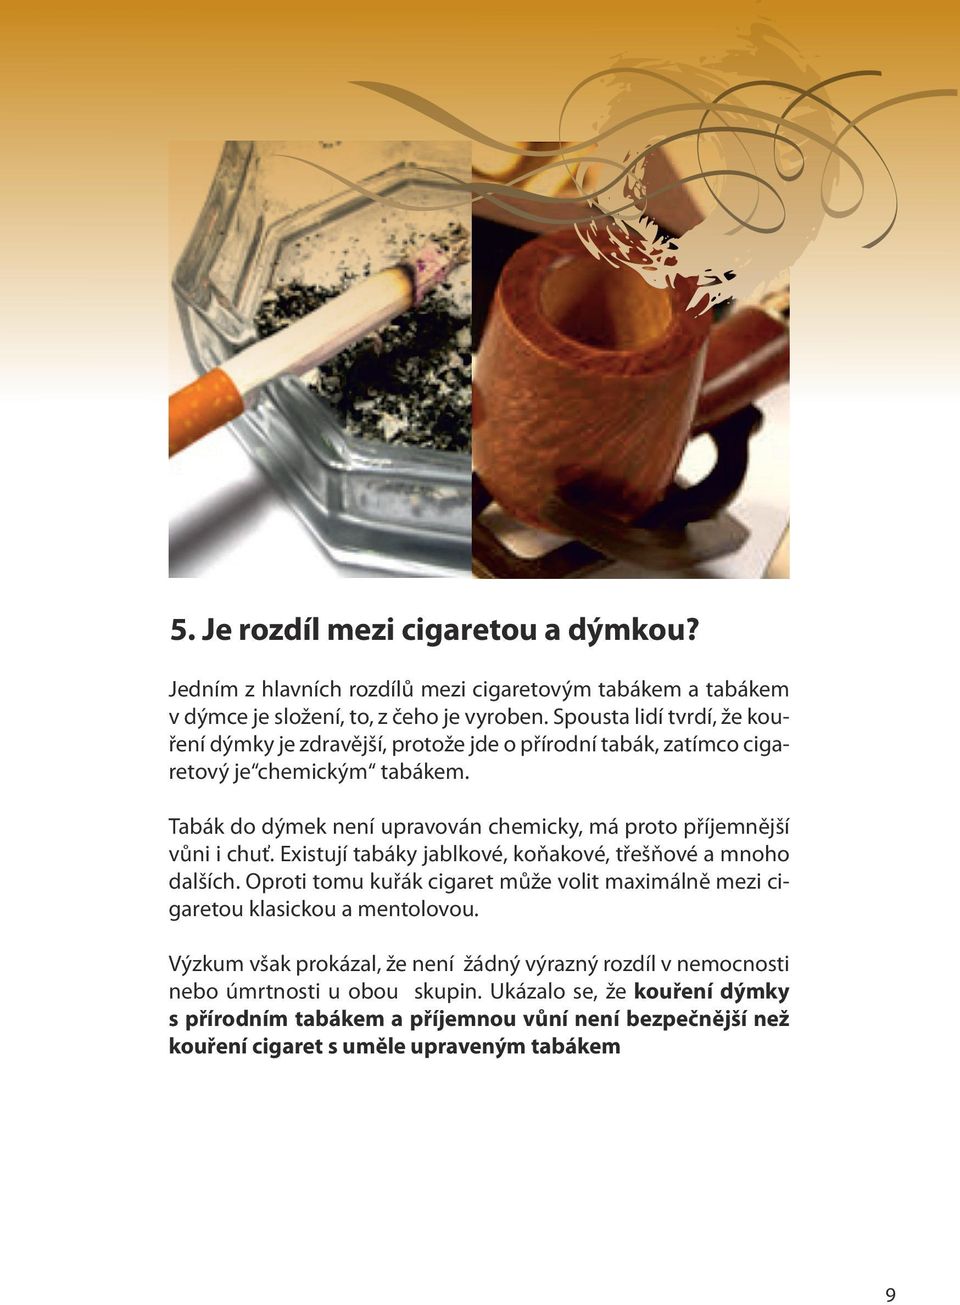 Tabák do dýmek není upravován chemicky, má proto příjemnější vůni i chuť. Existují tabáky jablkové, koňakové, třešňové a mnoho dalších.